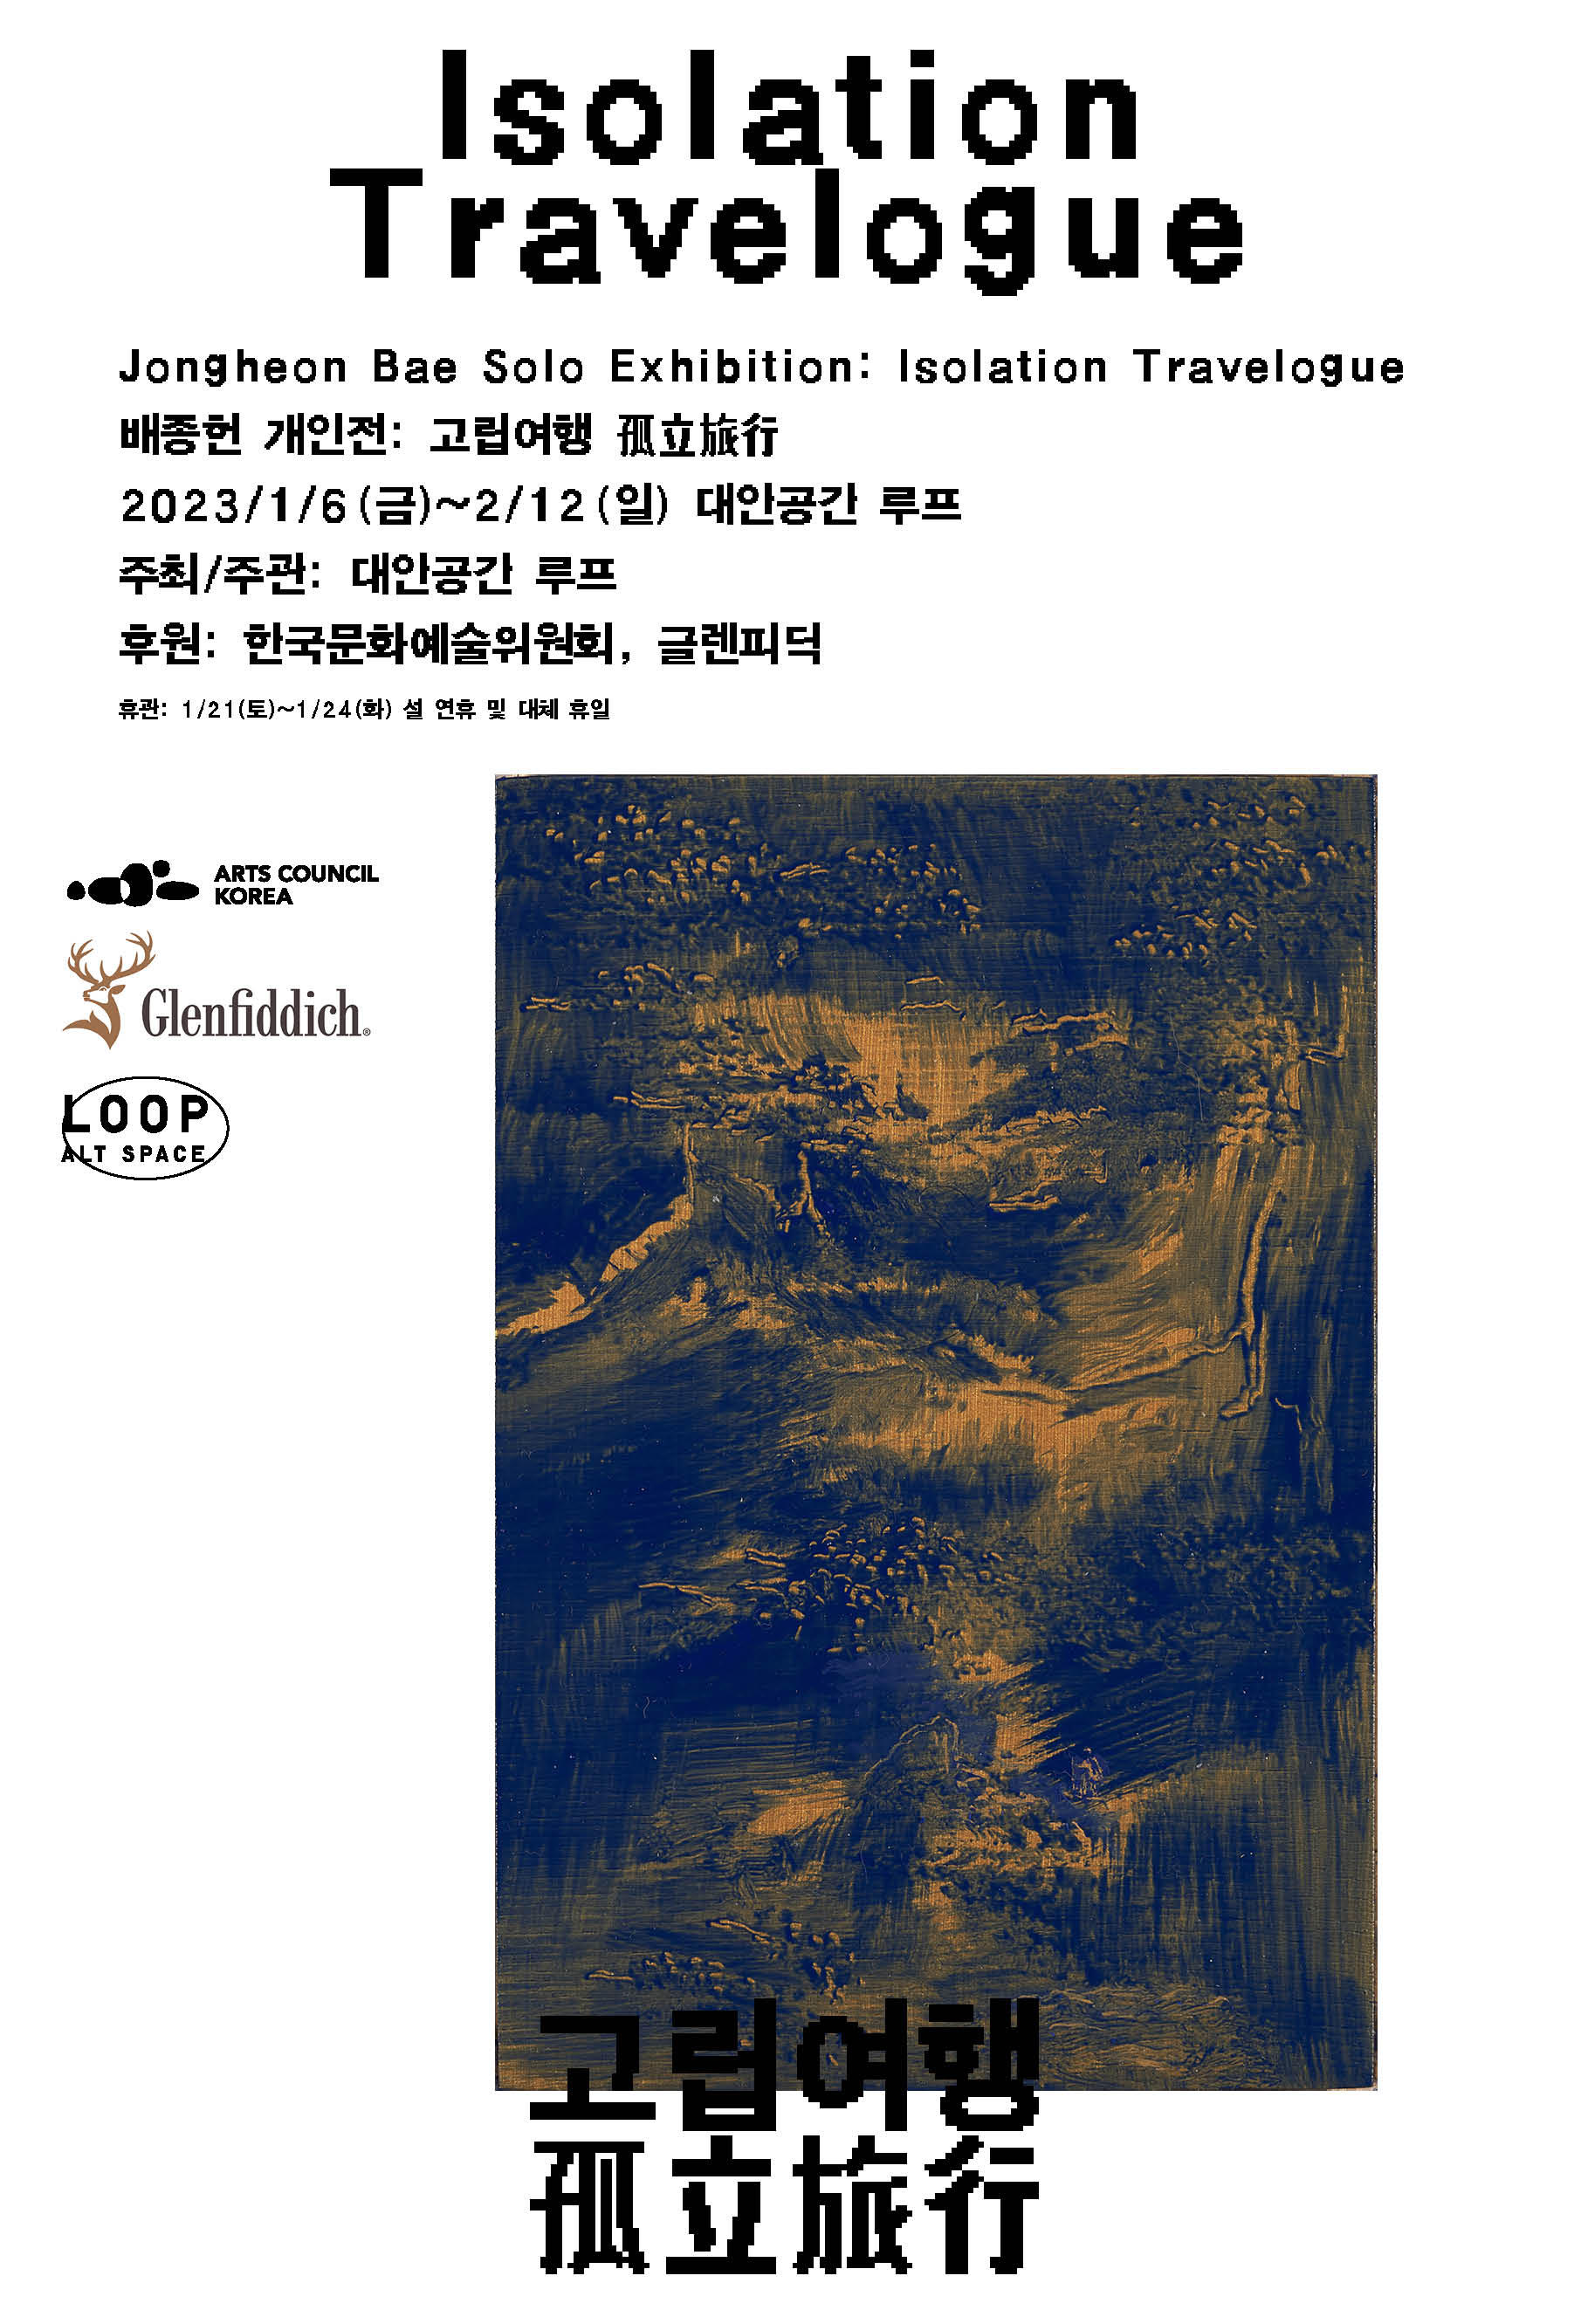 Jongheon Bae Solo Exhibition: Isolation Travelogue